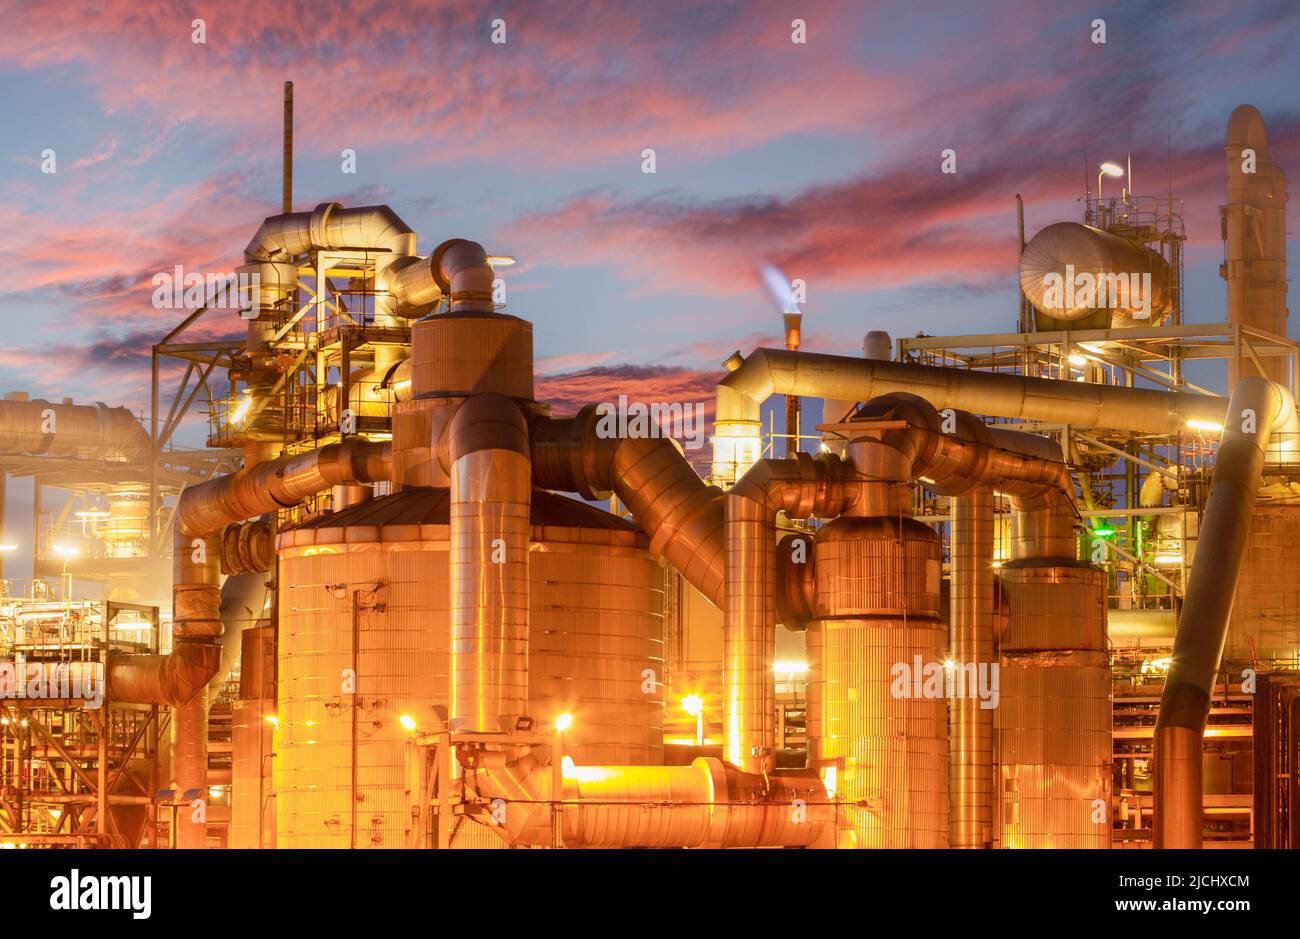 Petro chemical plant at sunset. UK Stock Photo